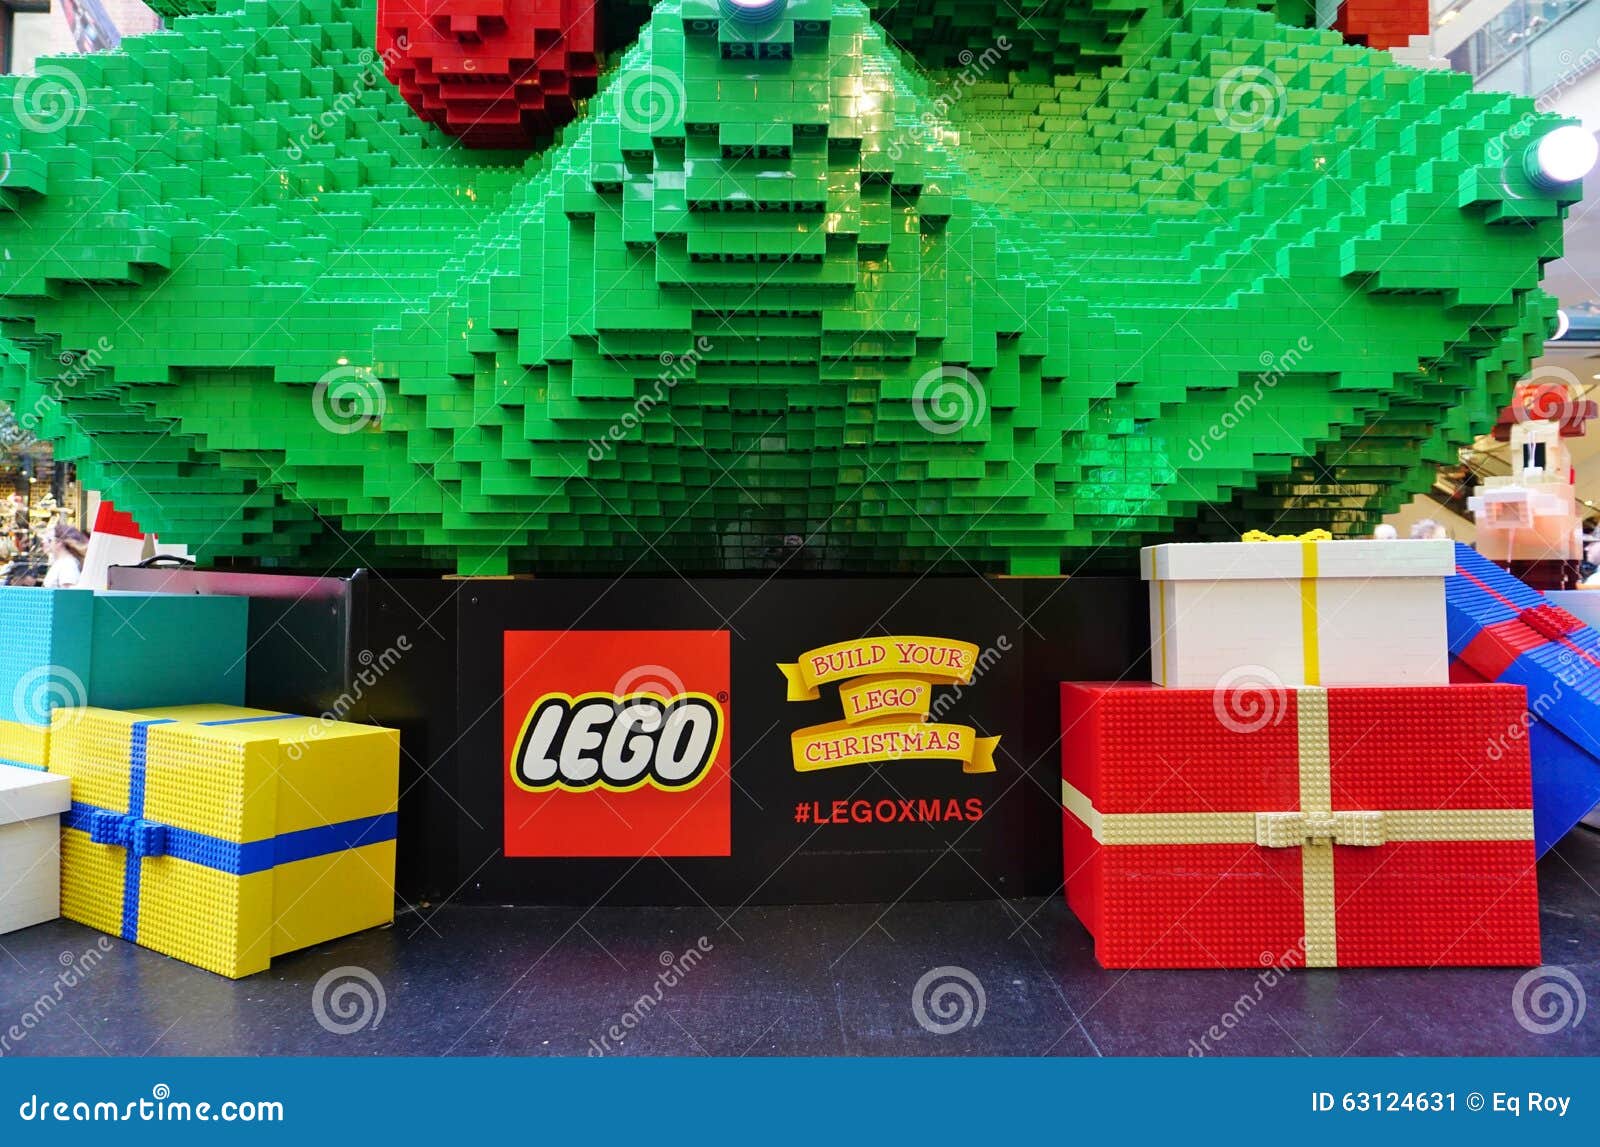 Decorazioni Natalizie Lego.La Festa Di Natale Ha Celebrato Giu Sotto A Sydney Con Le Decorazioni Di Lego Fotografia Editoriale Immagine Di Festa Australiano 63124631